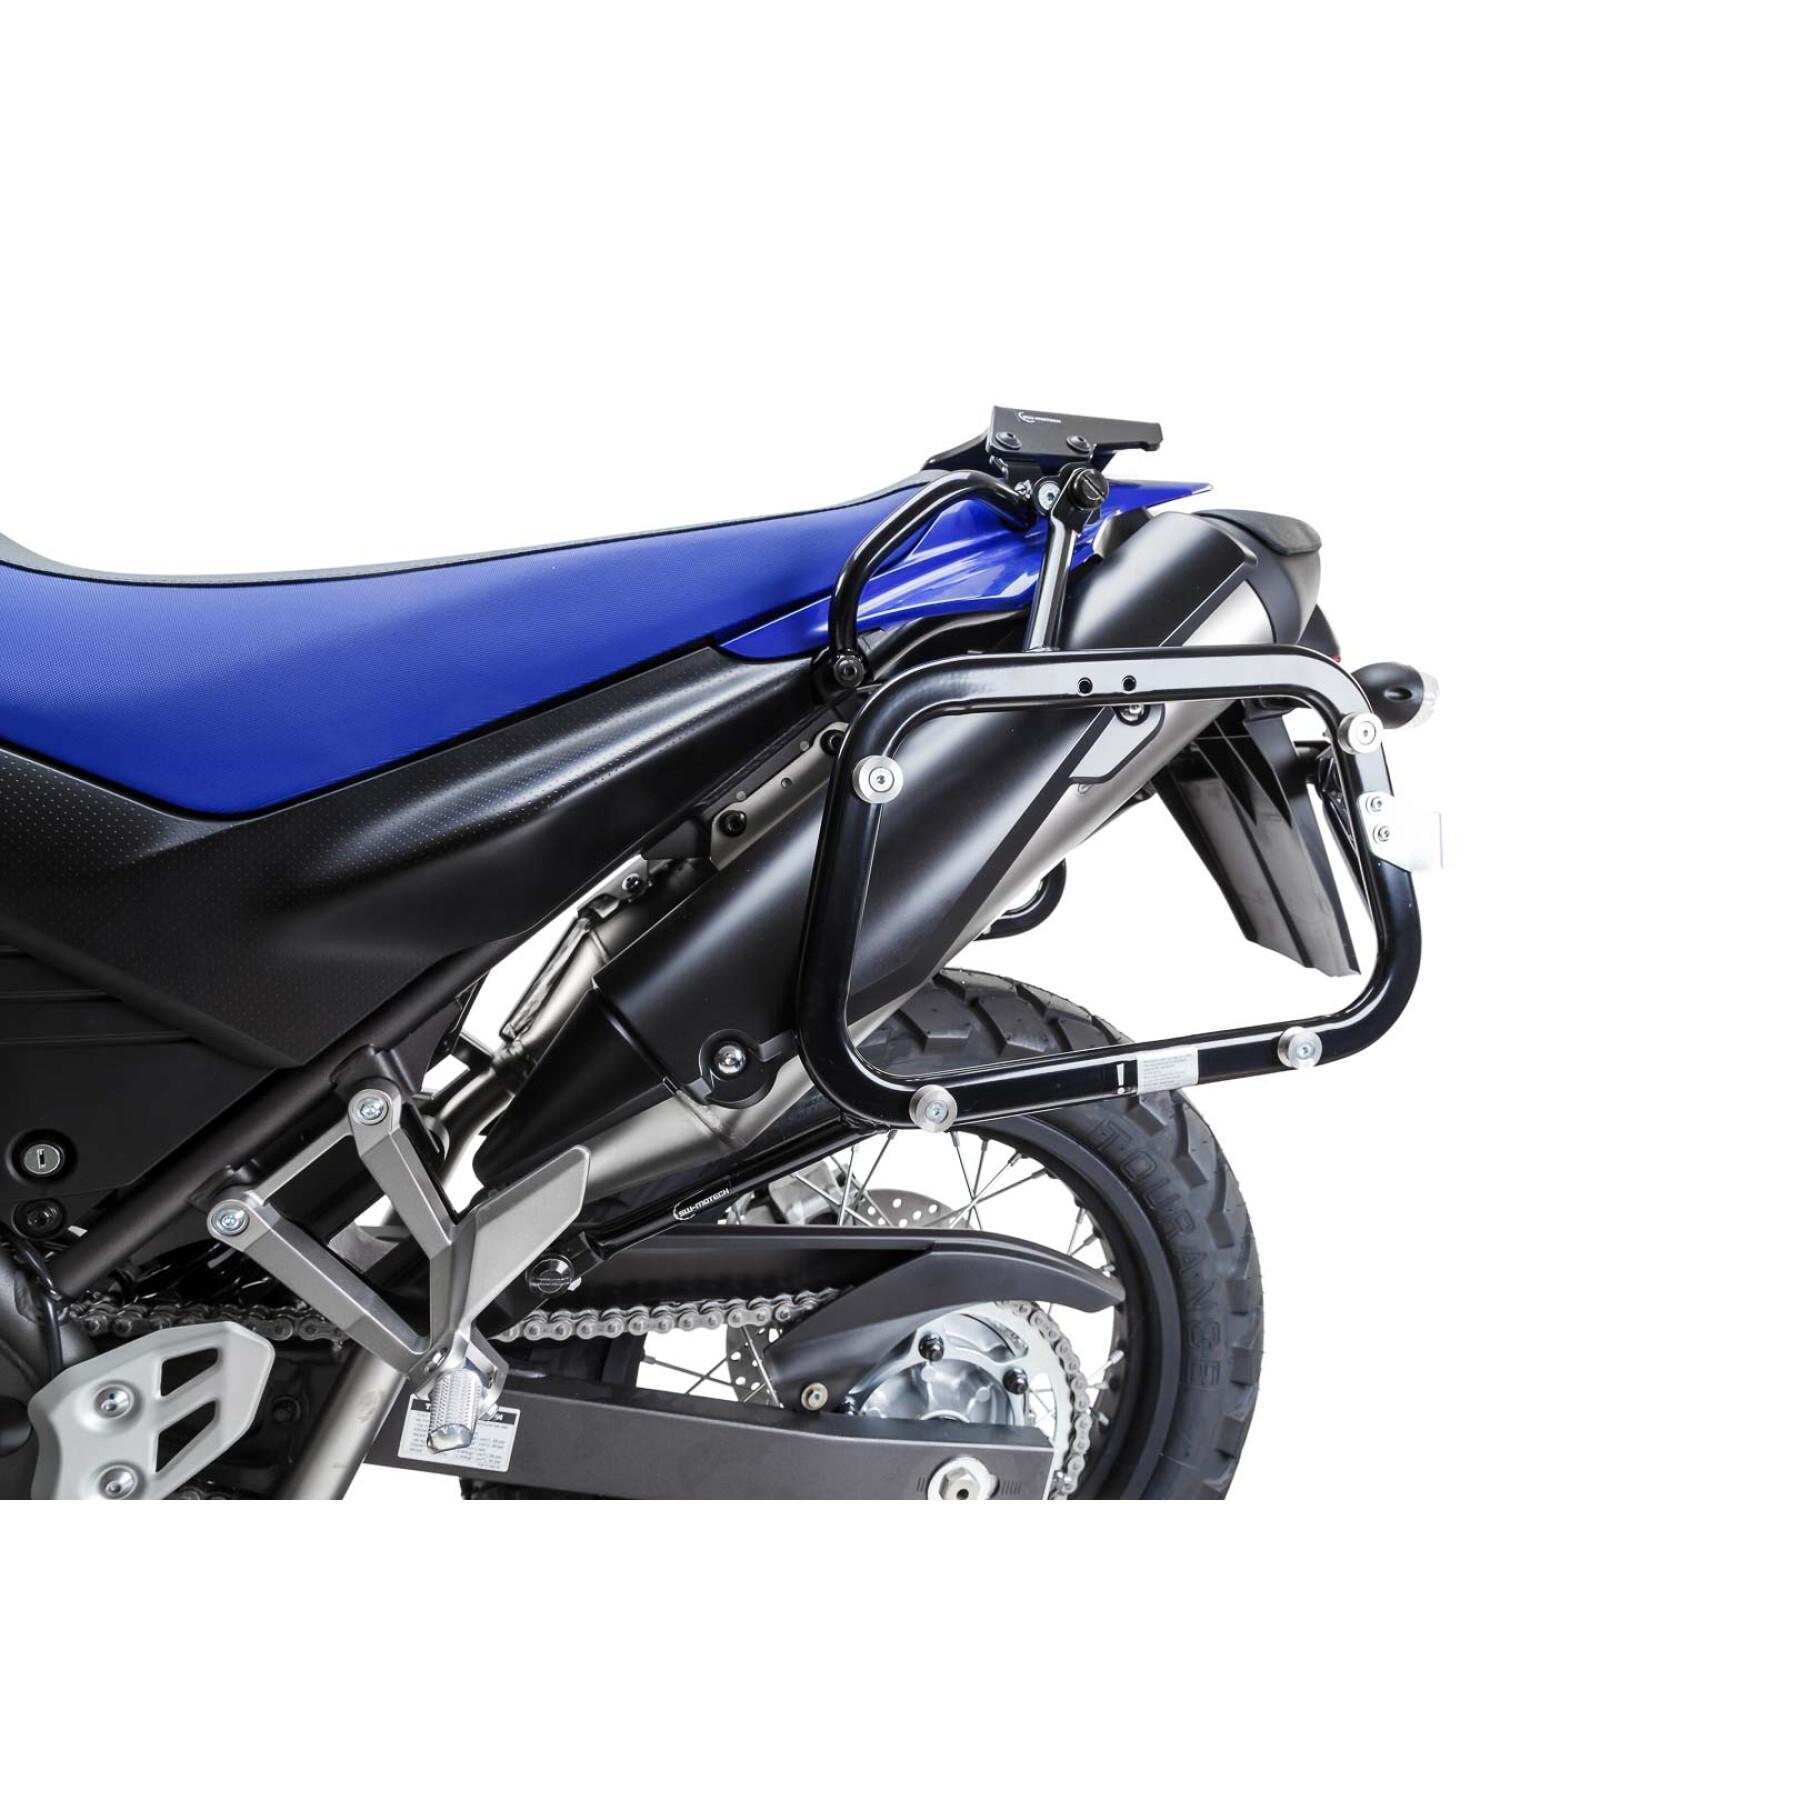 Wspornik kufra bocznego motocykla Sw-Motech Evo. Yamaha Xt 660 X / R (04-)